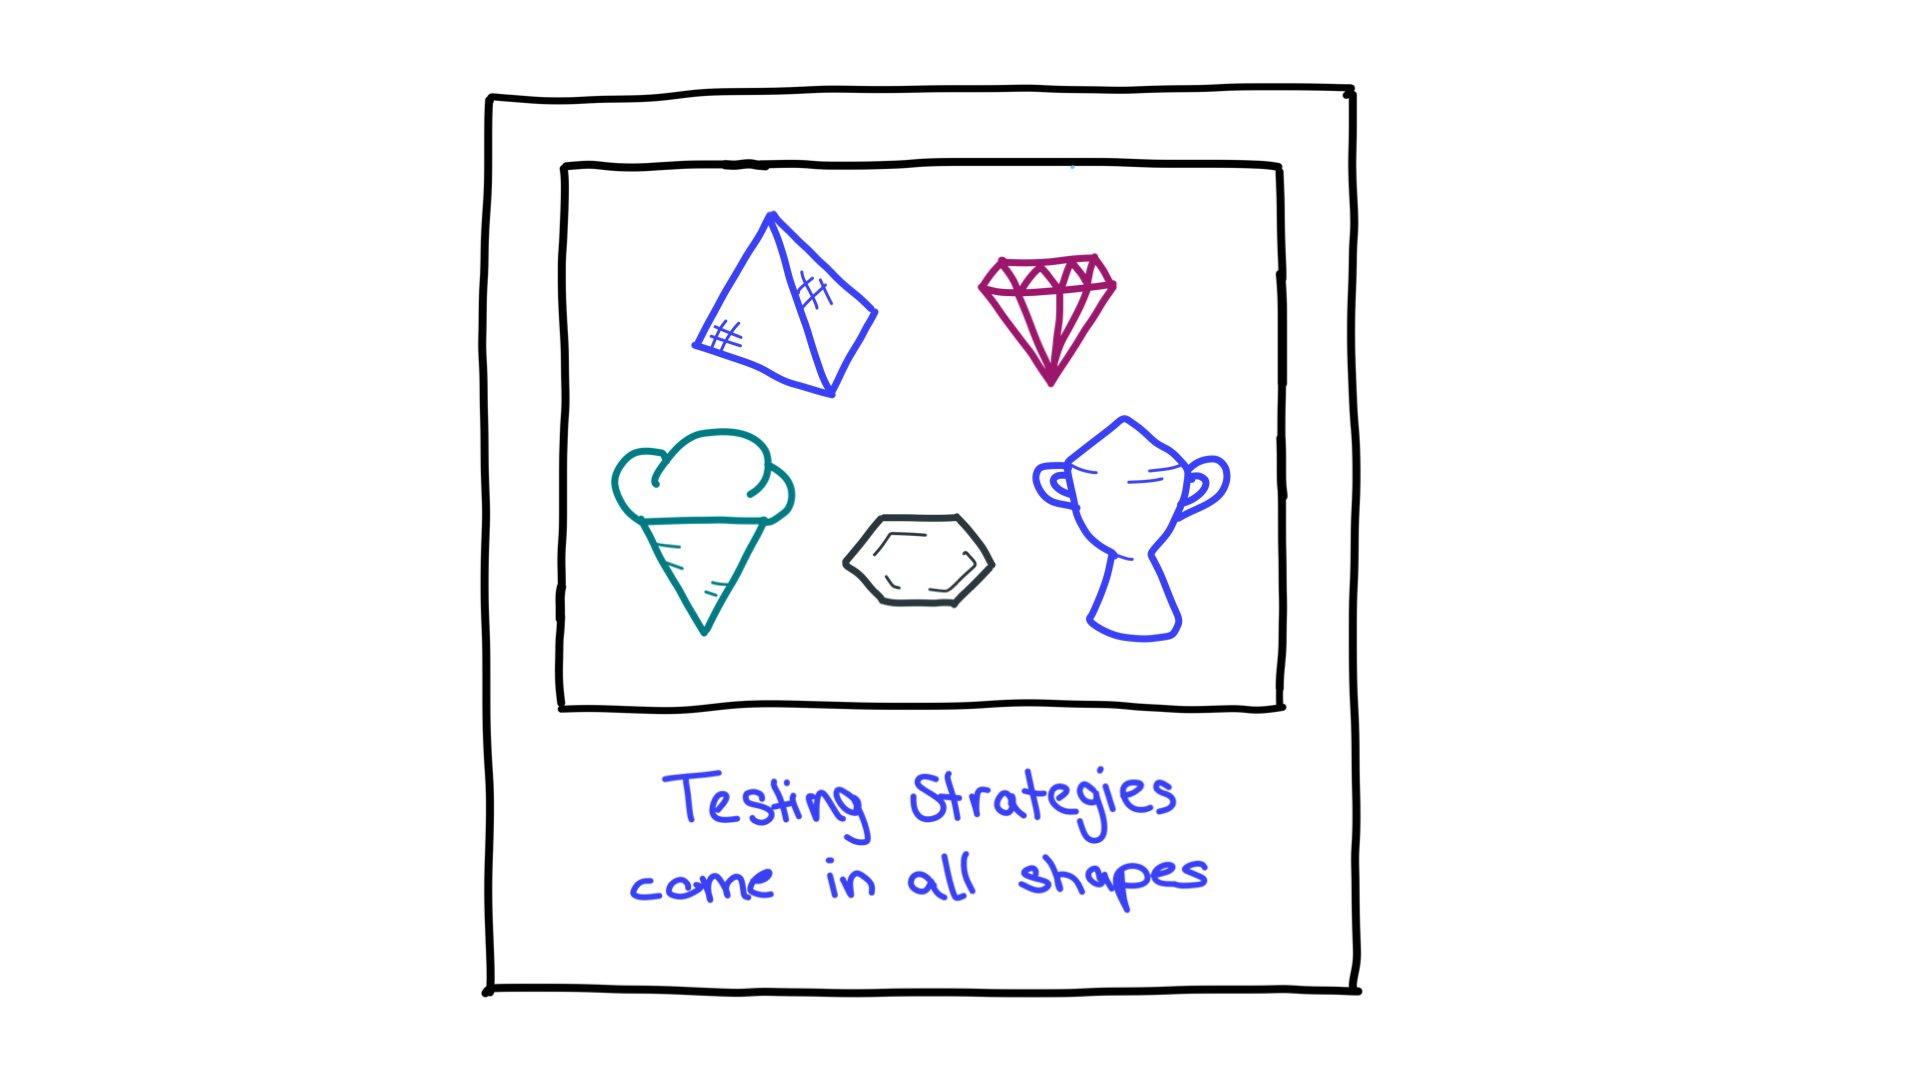 रणनीति से जुड़े आकारों की टेस्टिंग के कुछ उदाहरण: पिरामिड, कट किया हुआ हीरा, आइसक्रीम कोन, षट्भुज, और ट्रॉफ़ी.